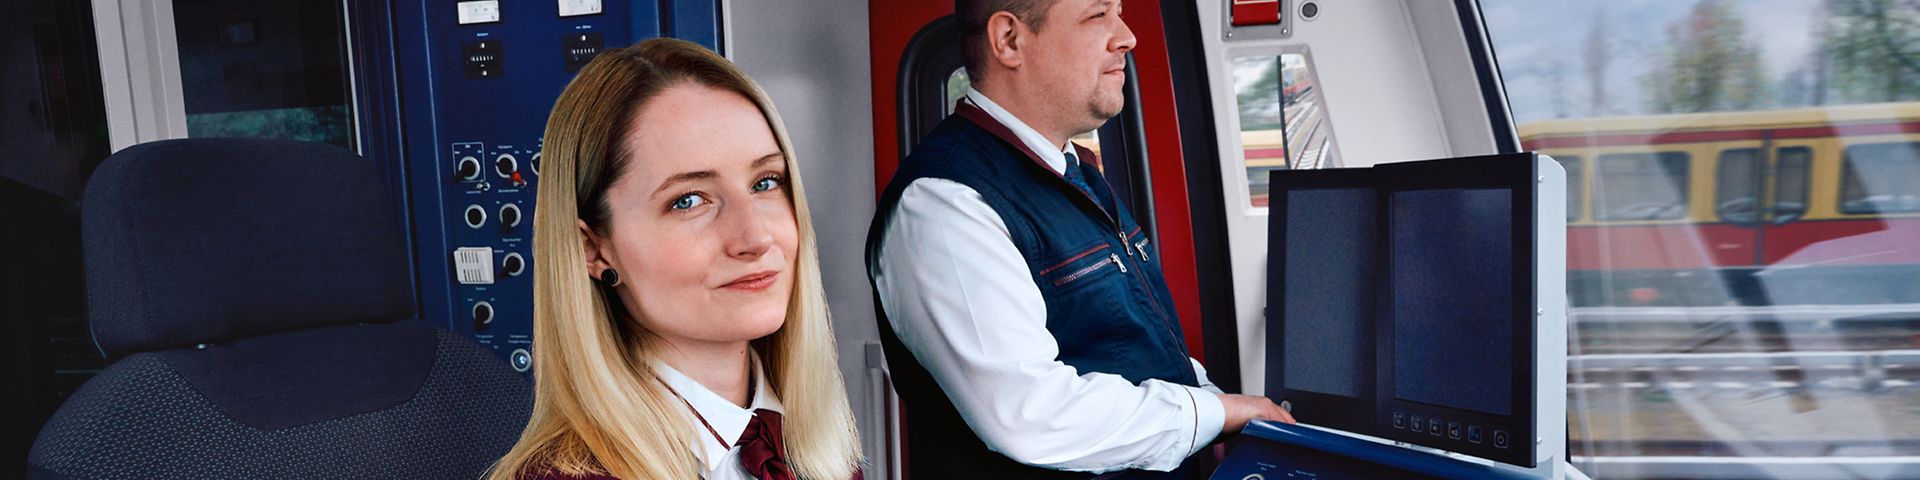 Eine Auszubildende zur Lokführerin sitzt neben einem Ausbilder im Führerstand einer S-Bahn und steuert den Zug